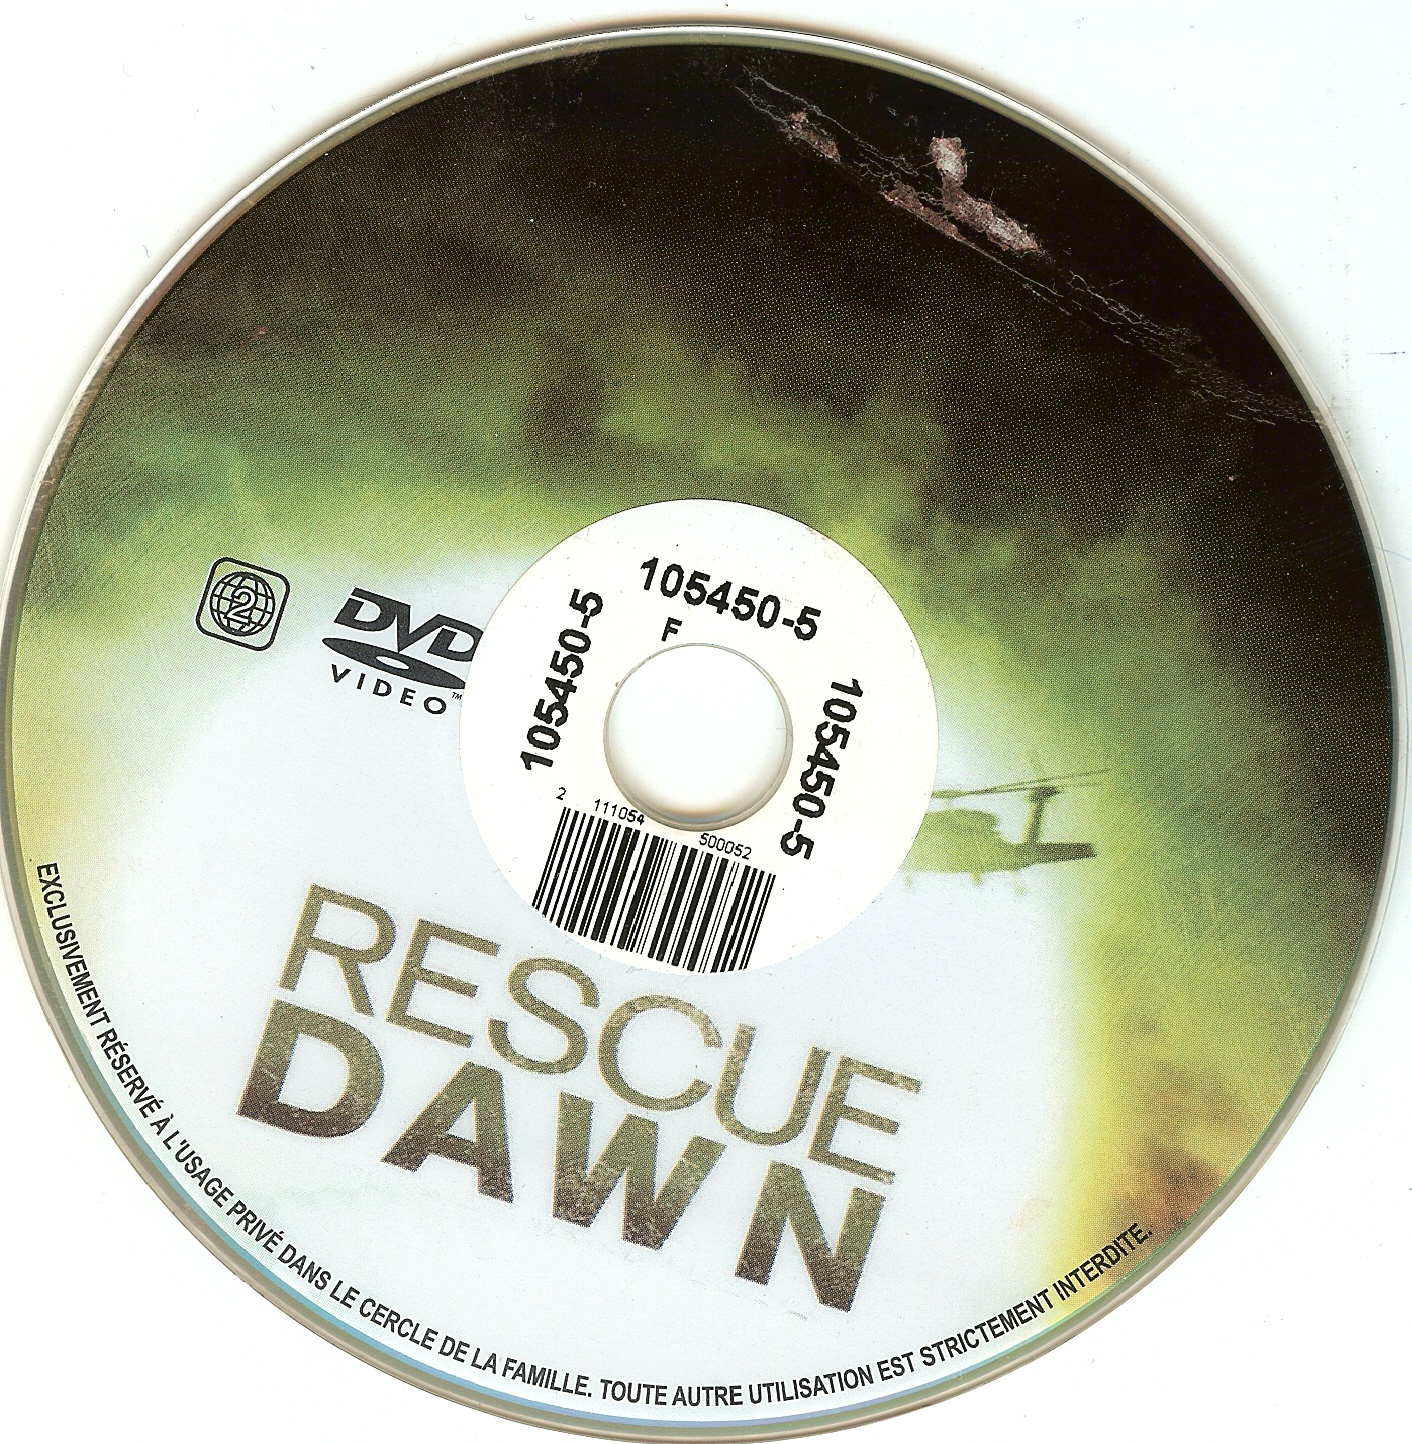 Rescue dawn